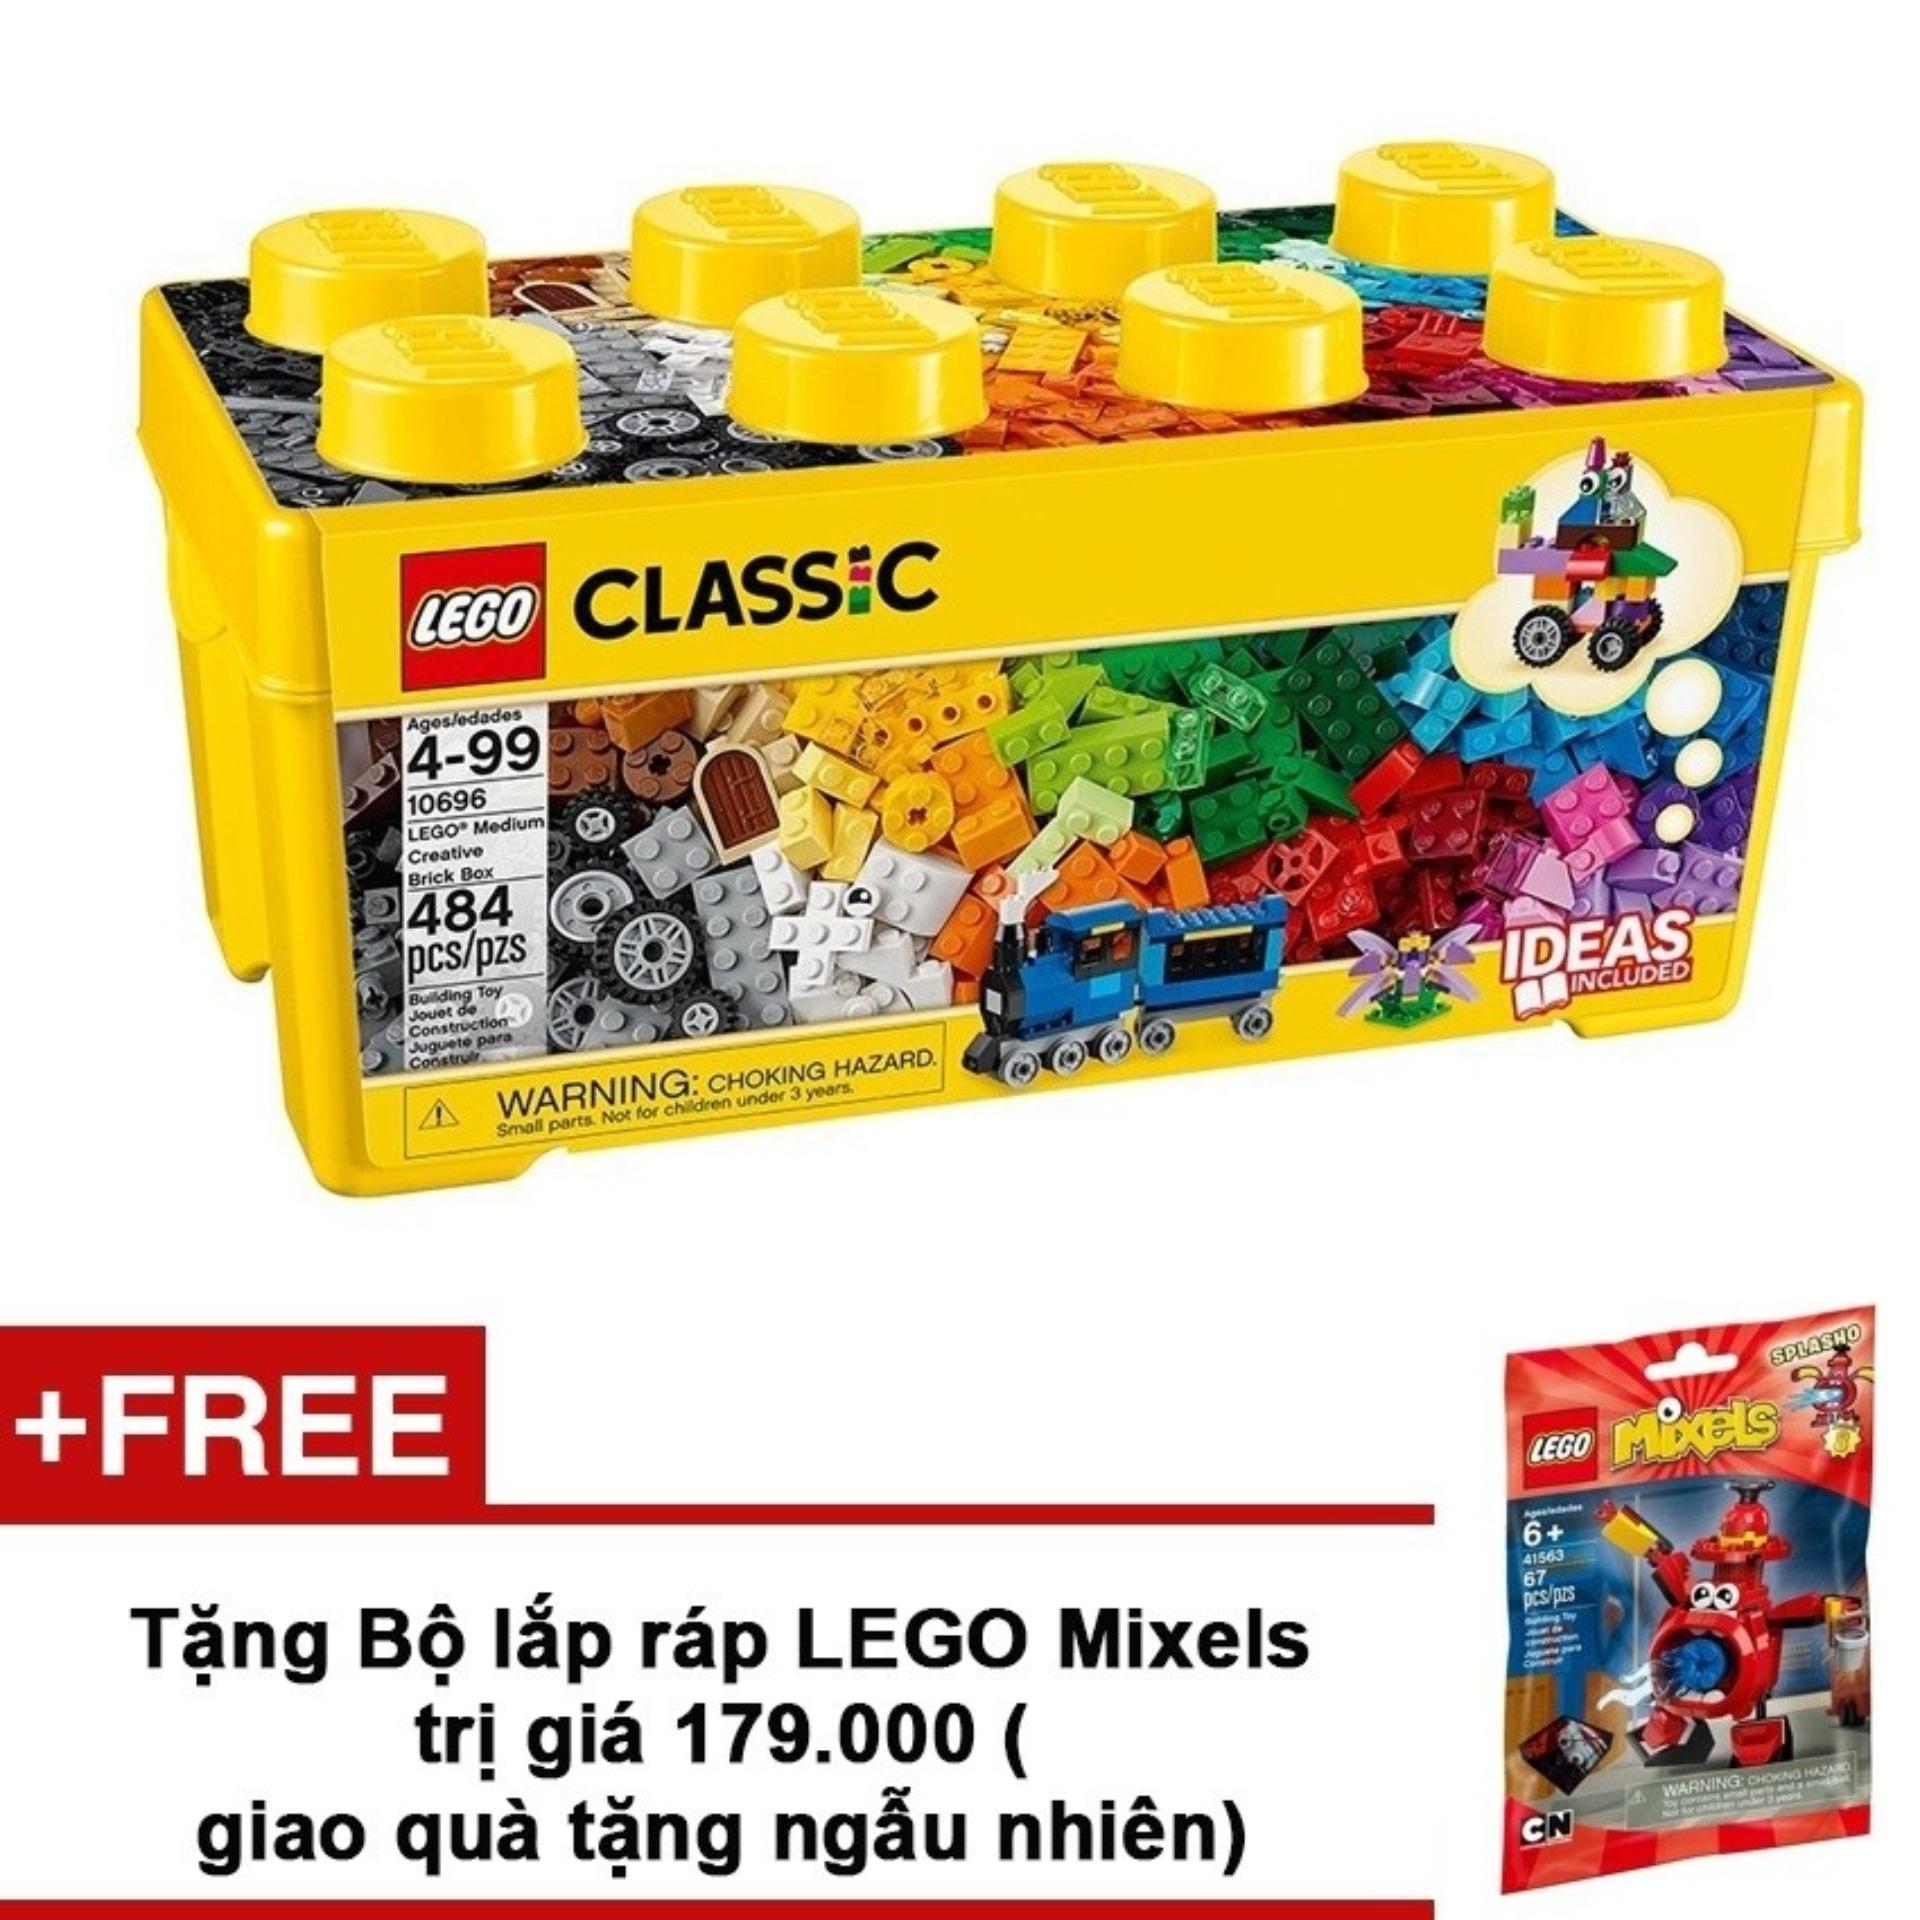 Thùng gạch Lego Classic Sáng Tạo 10696 484 chi tiết + Tặng bộ lắp ráp LEGO ngẫu nhiên trị giá...